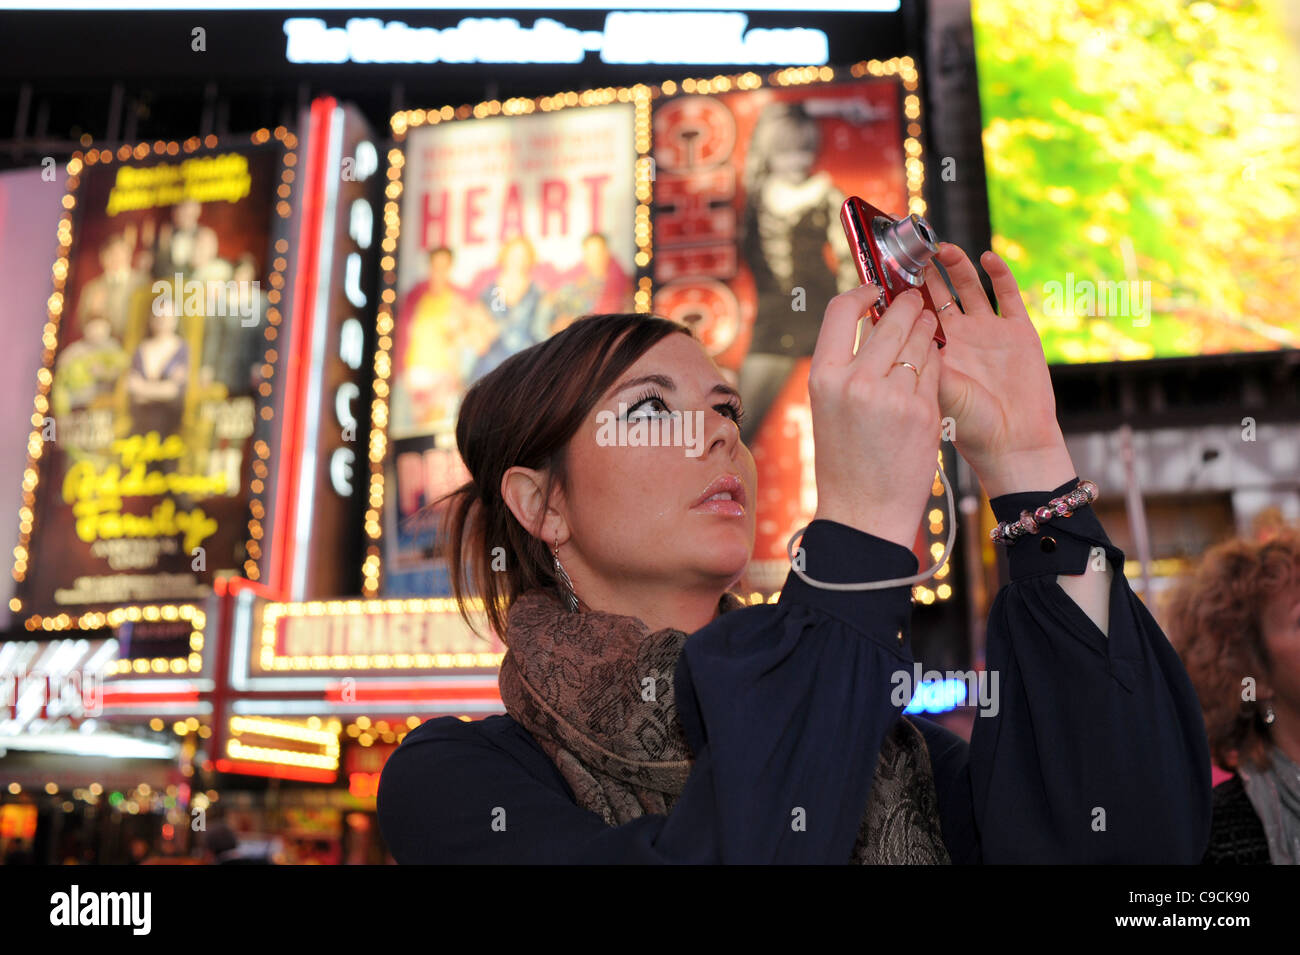 Prendre des photographies touristiques la nuit à Times Square Manhattan New York NYC USA Amérique latine Banque D'Images